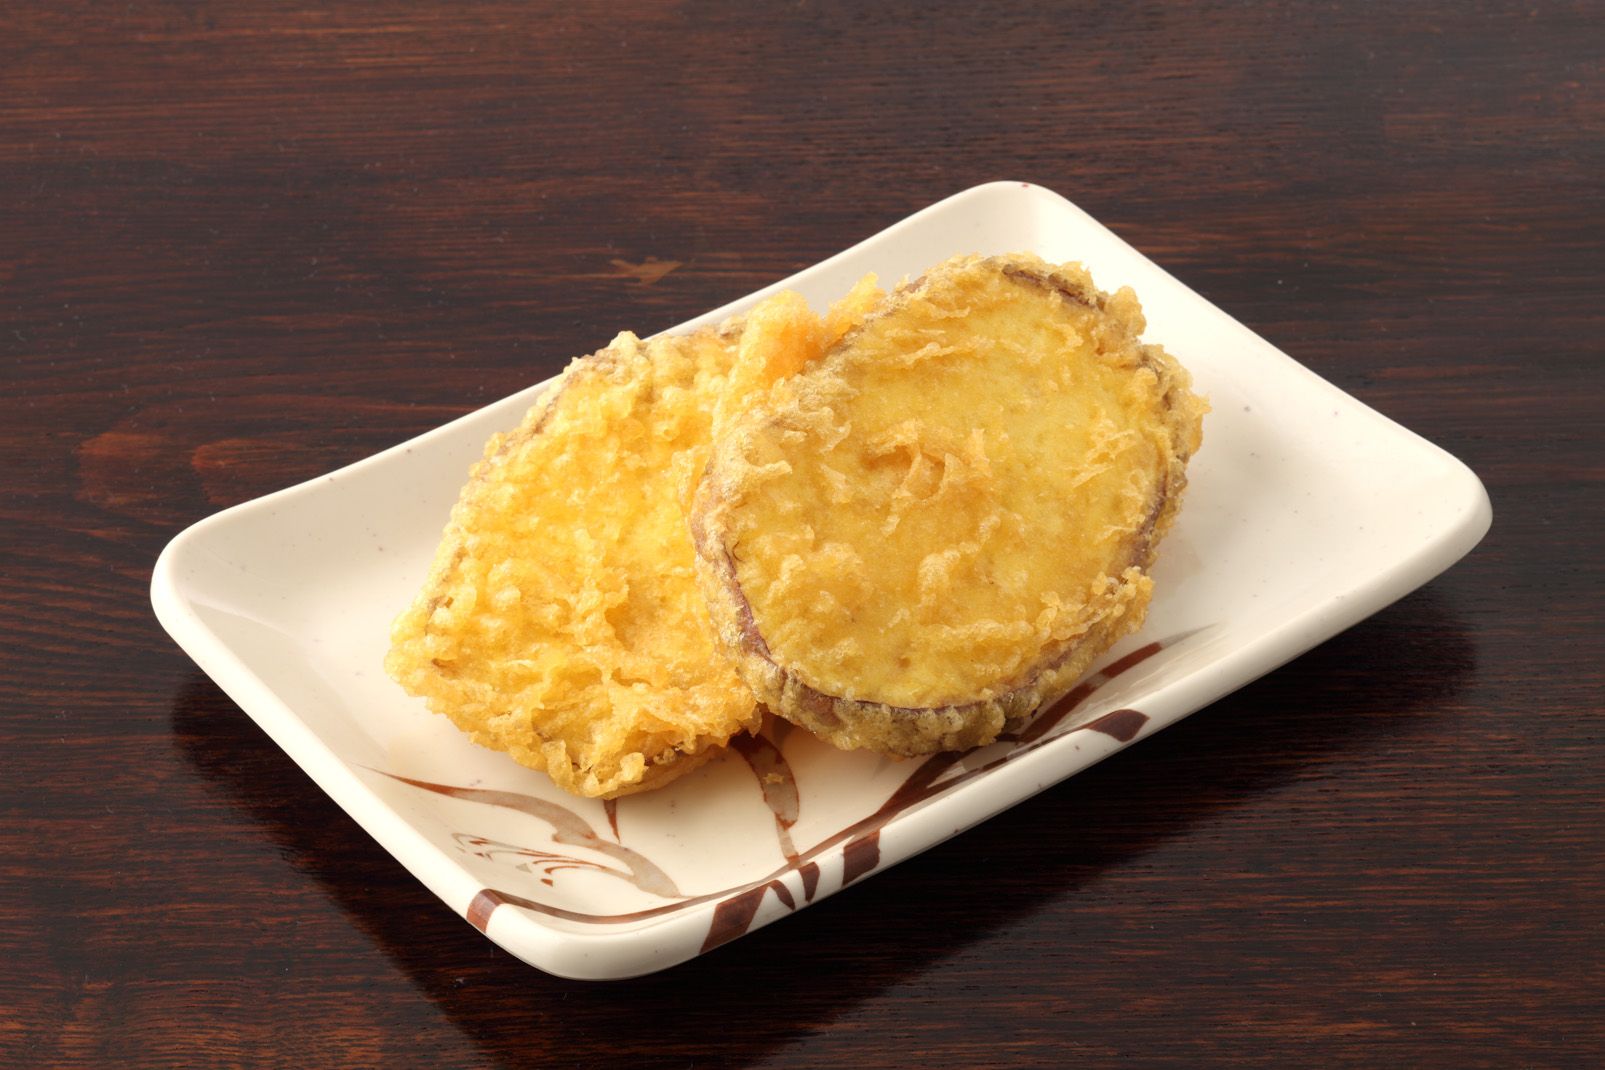 丸亀製麺の天ぷらテイクアウト人気ランキング2位の「さつまいも天」